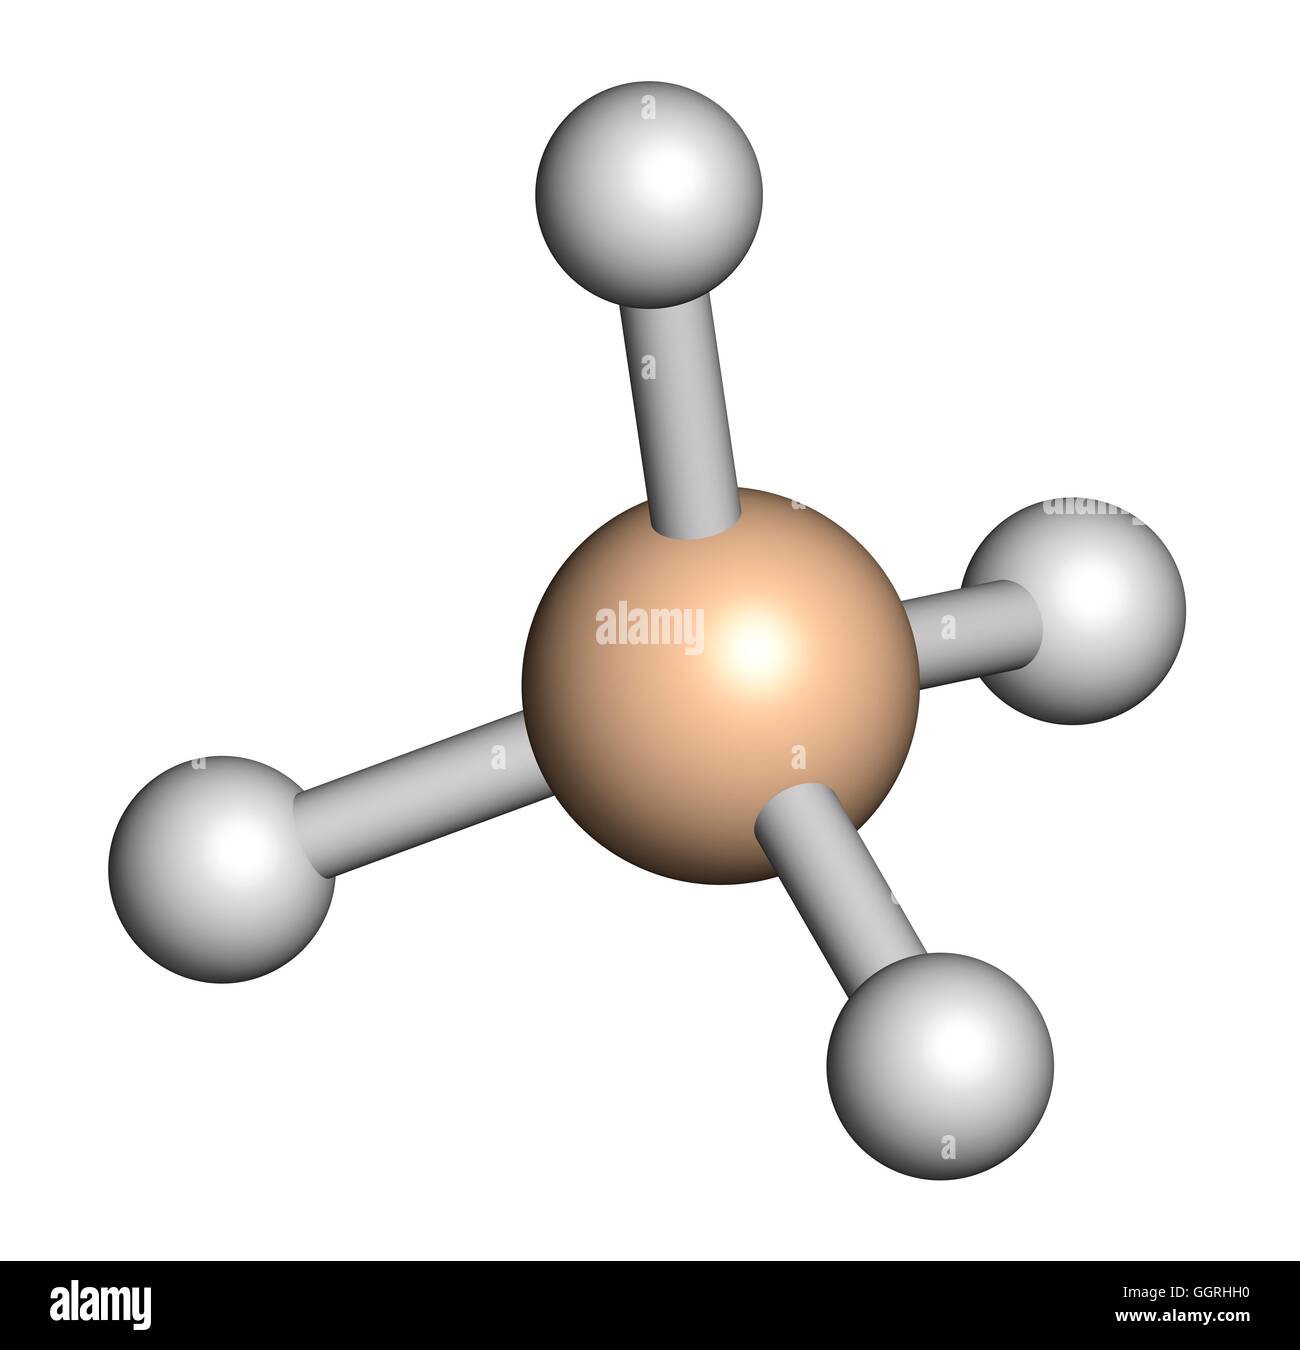 El silano (SiH4), modelo molecular. Los átomos son representados como  esferas con codificación de color convencional: silicio (beige), hidrógeno  (blanco). Ilustración Fotografía de stock - Alamy